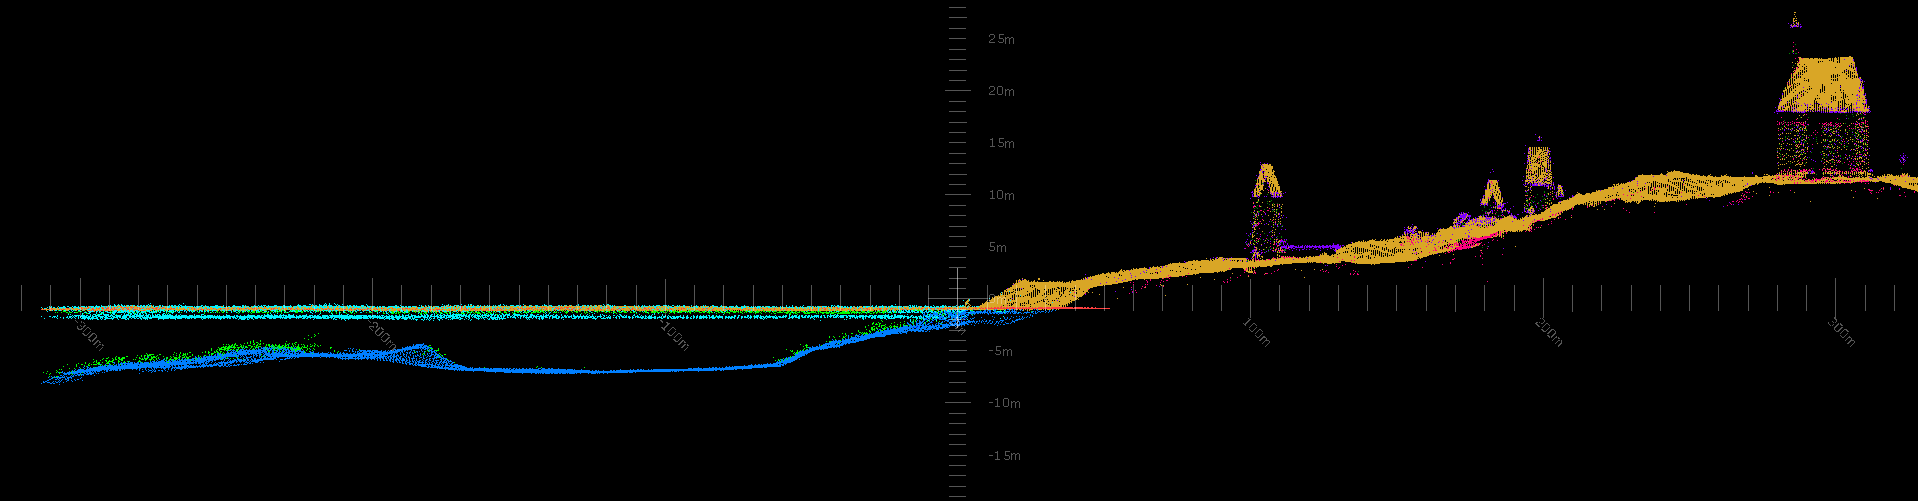 Les premiers résultats non traités : l'Ile aux Marins et les fonds environnants. L'échelle verticale est exagérée ce qui explique la déformation des bâtiments. La surface d'eau est représentée par une ligne verticale.